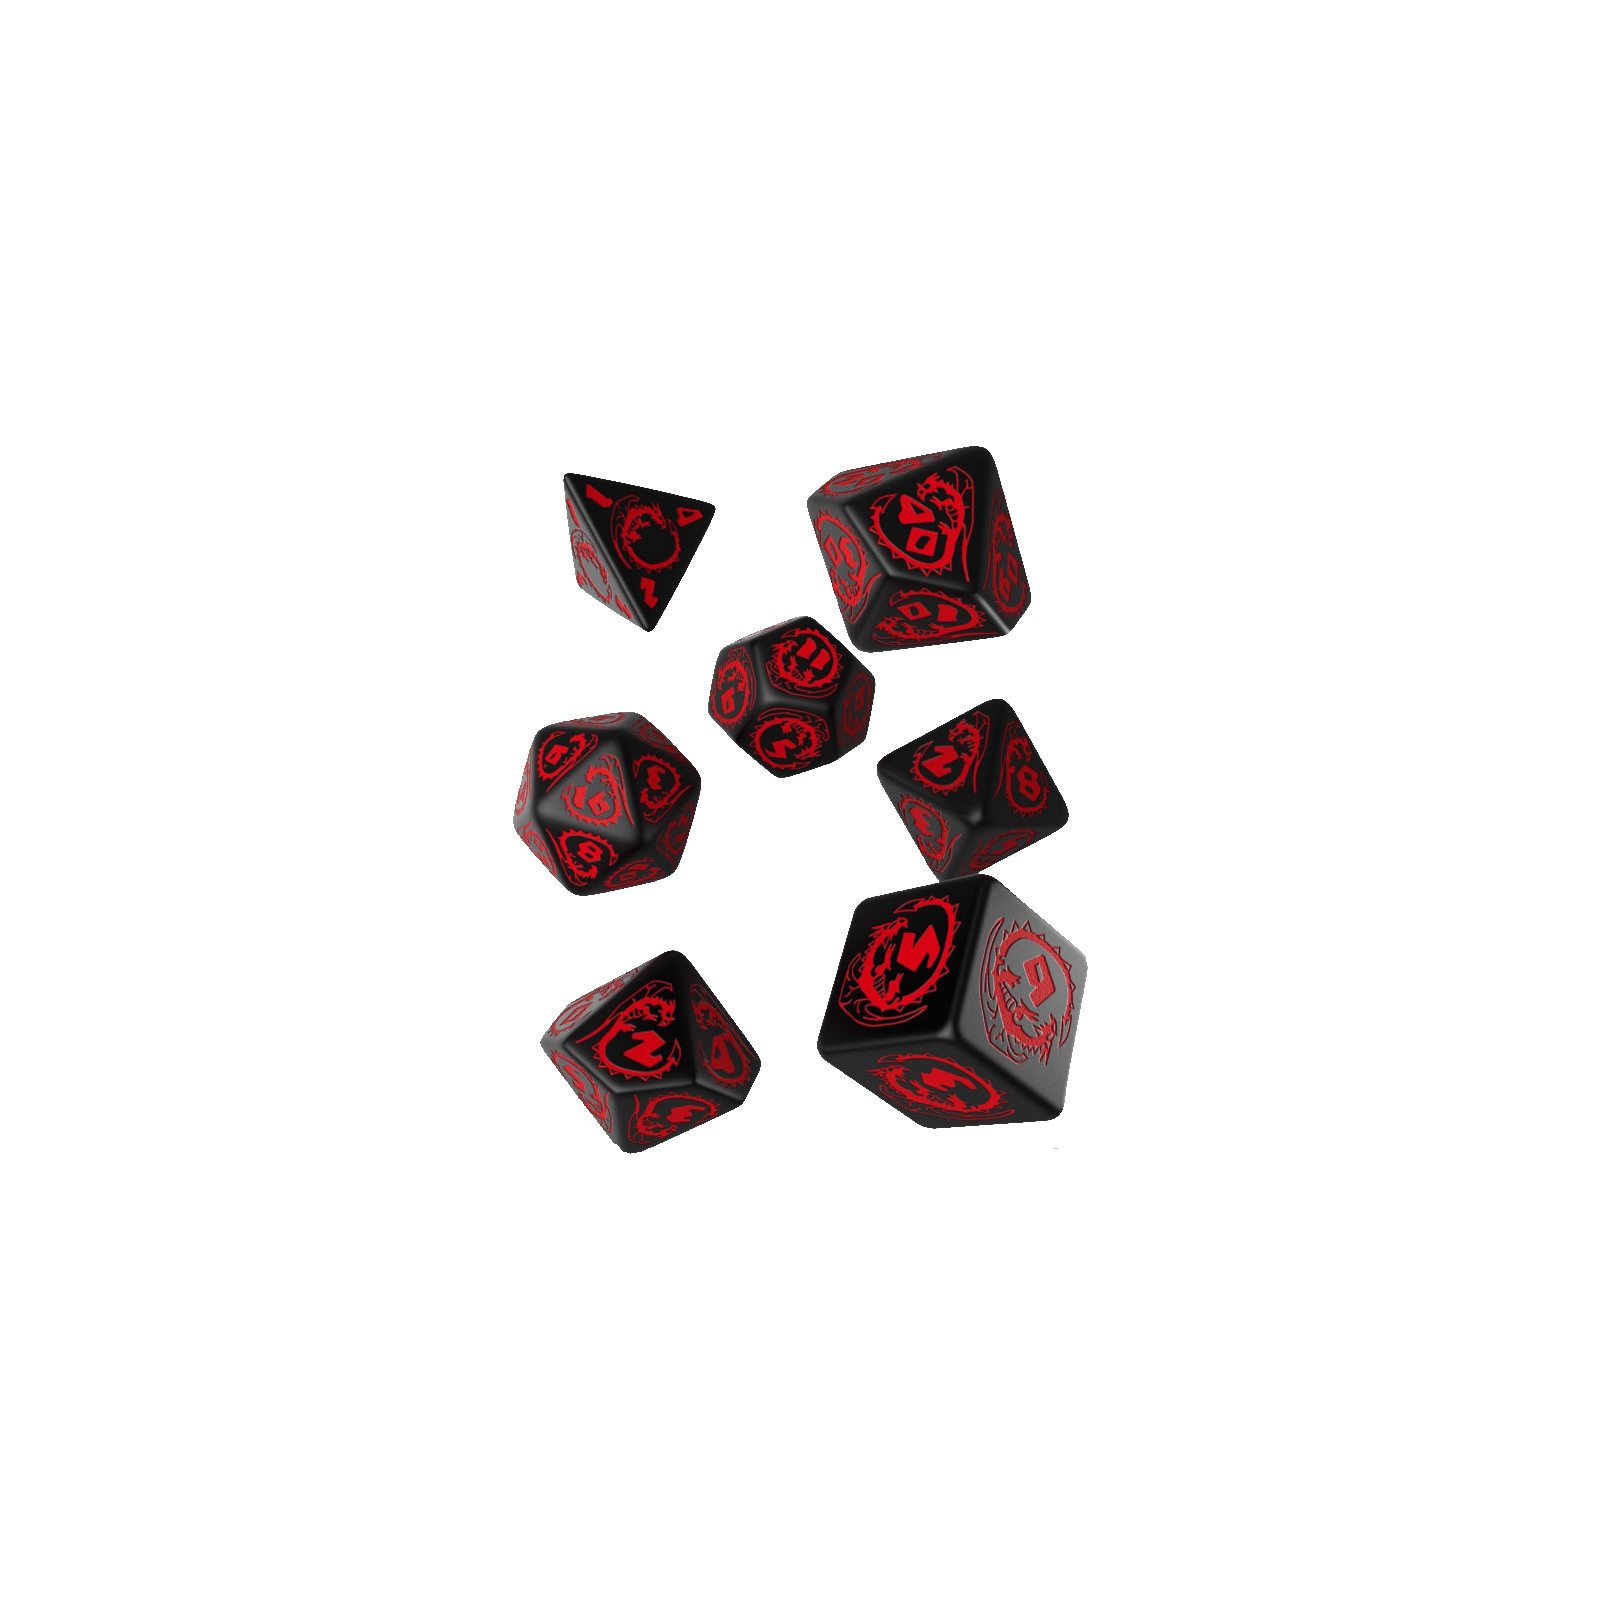 Набор кубиков для настольных игр Q-Workshop Dragons Black red Dice Set (7 шт) (SDRA06)